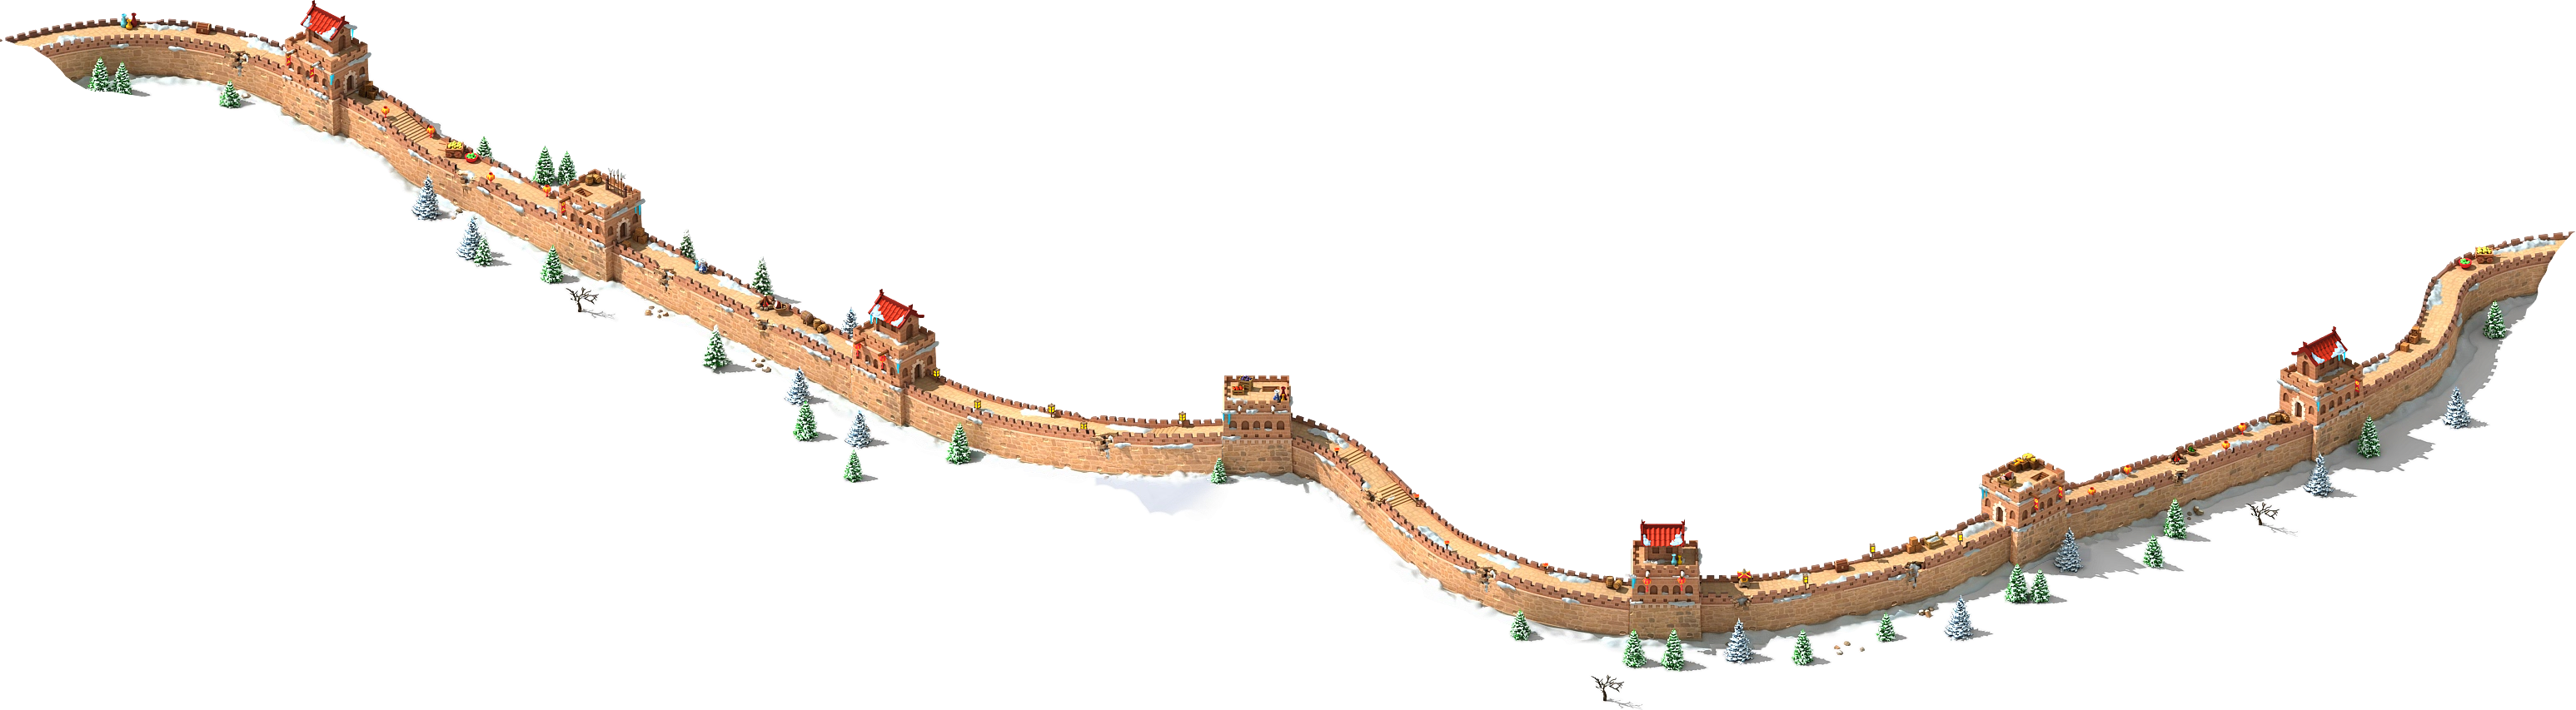 Great Wall Of China PNG Image